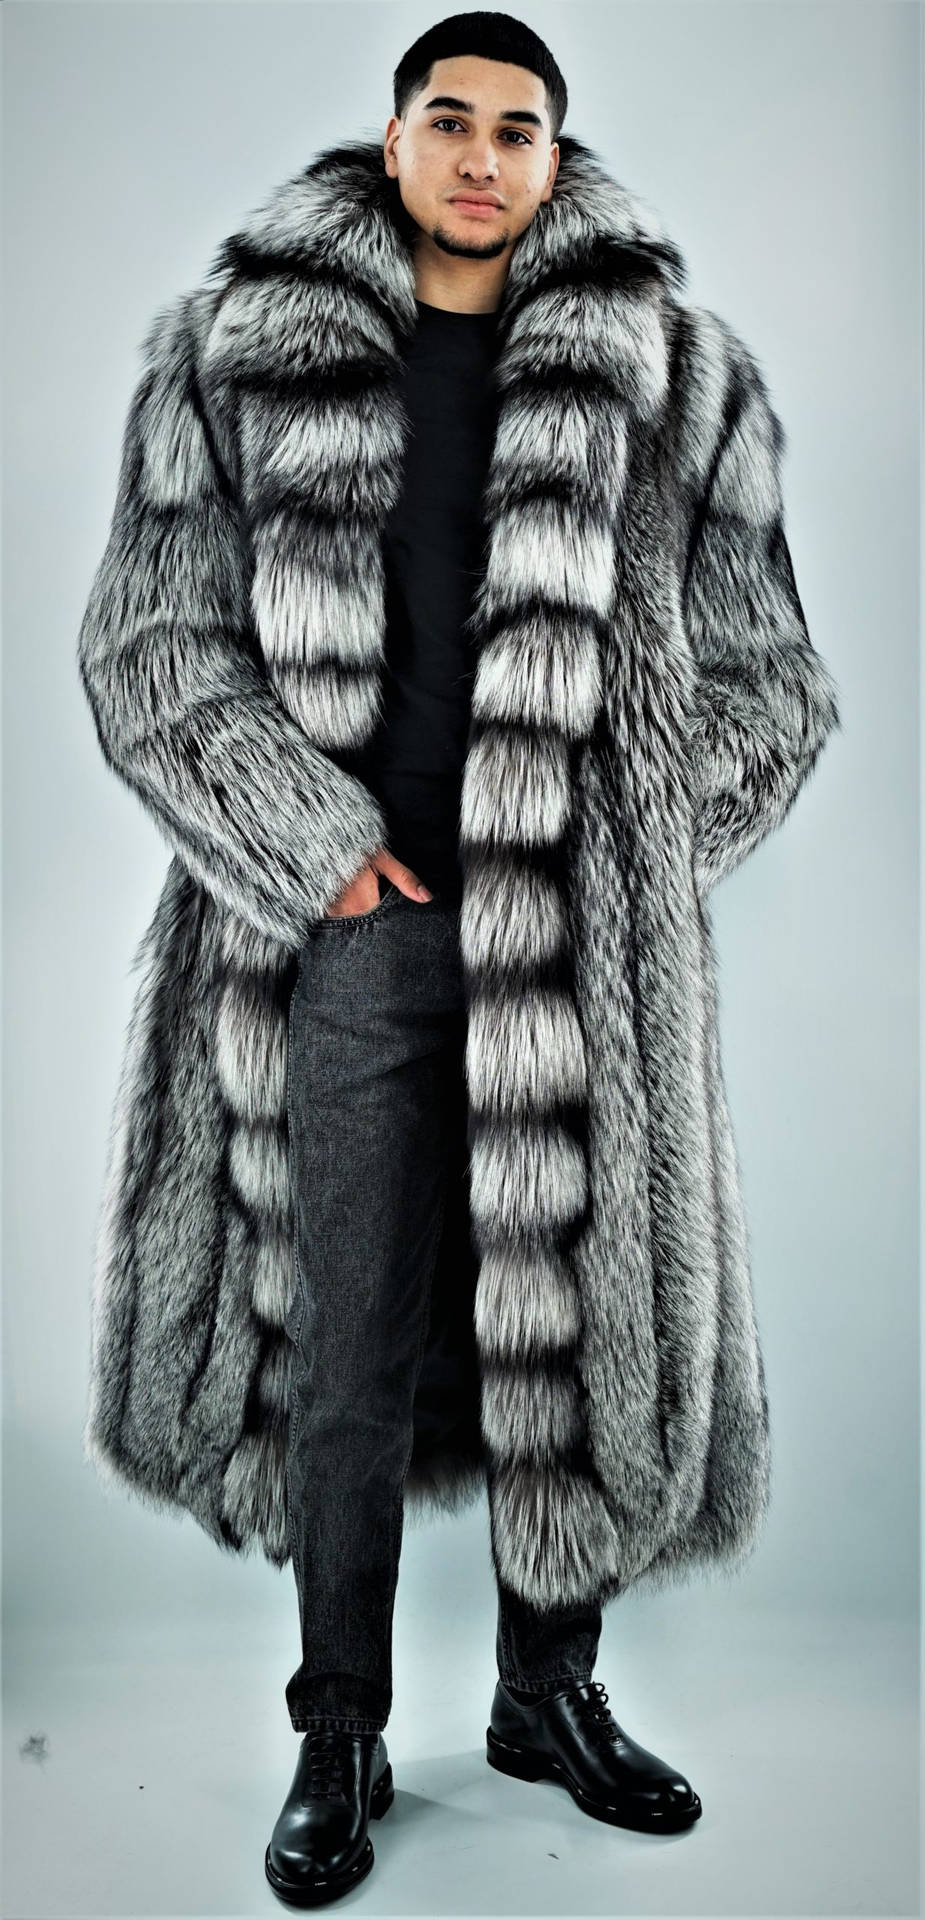 camouflage jacket men's winter coat men wool pea coats for sale